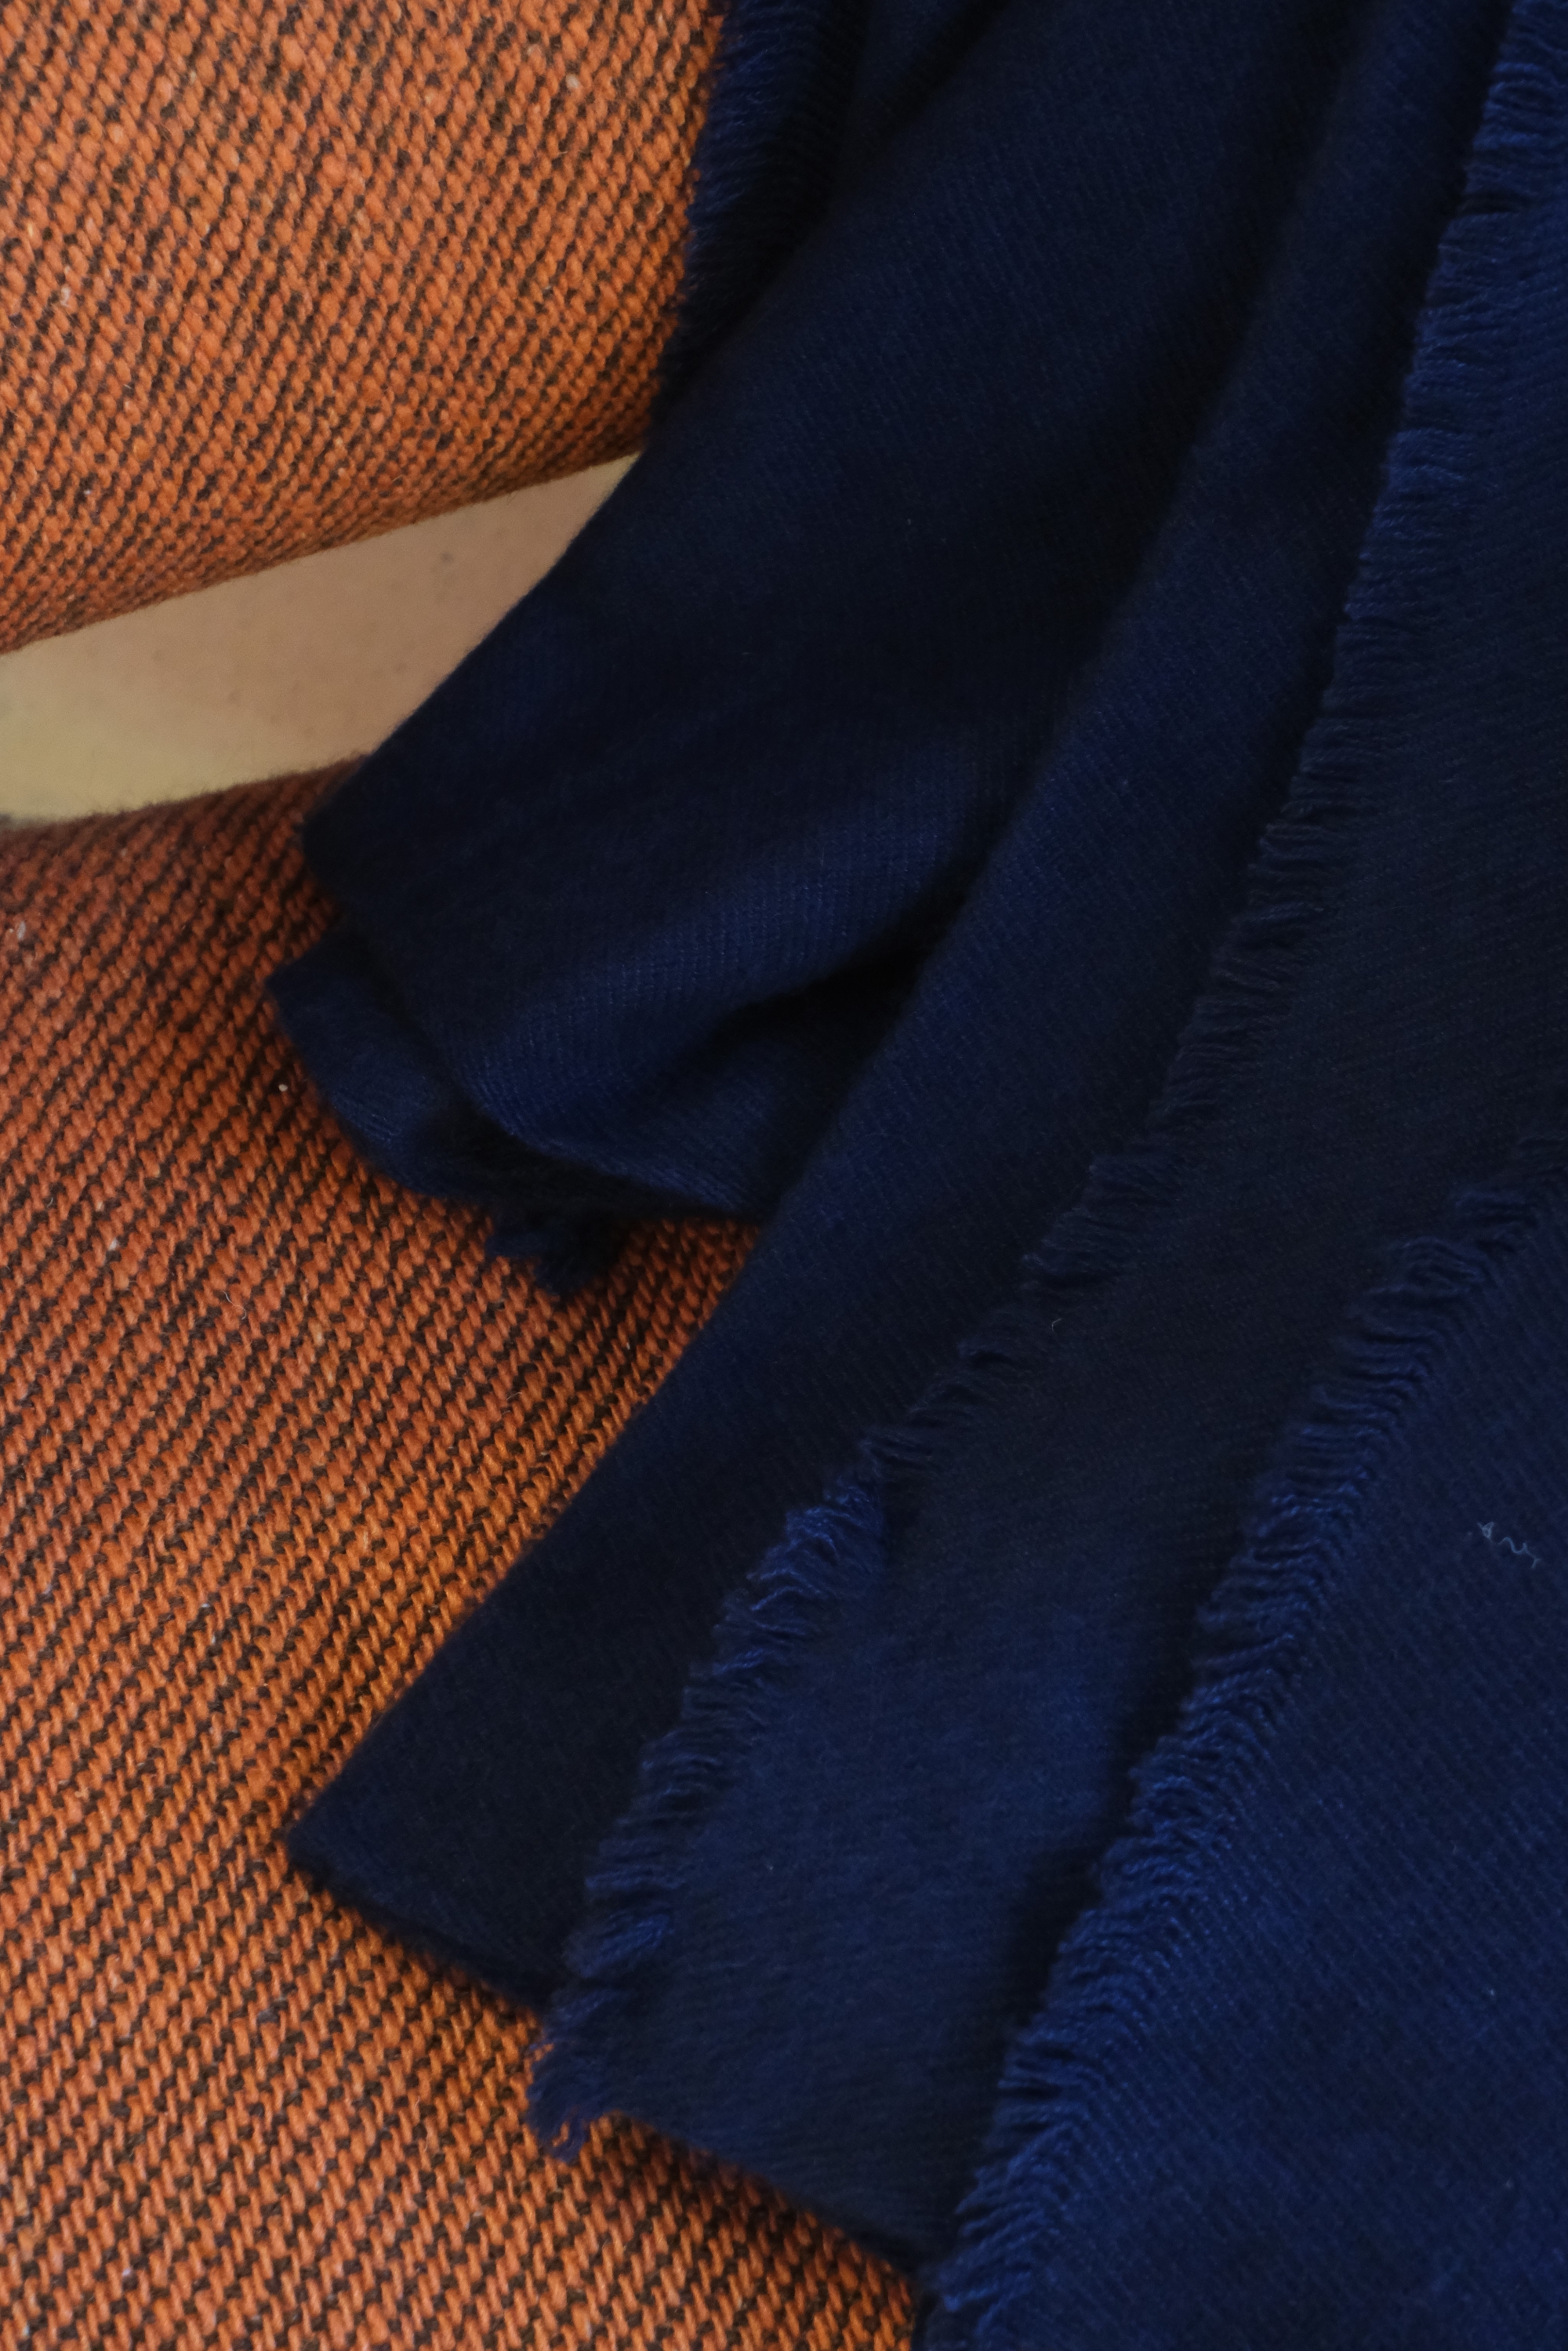 Cashmere accessories blanket toodoo plain xl 240 x 260 dark navy 240 x 260 cm